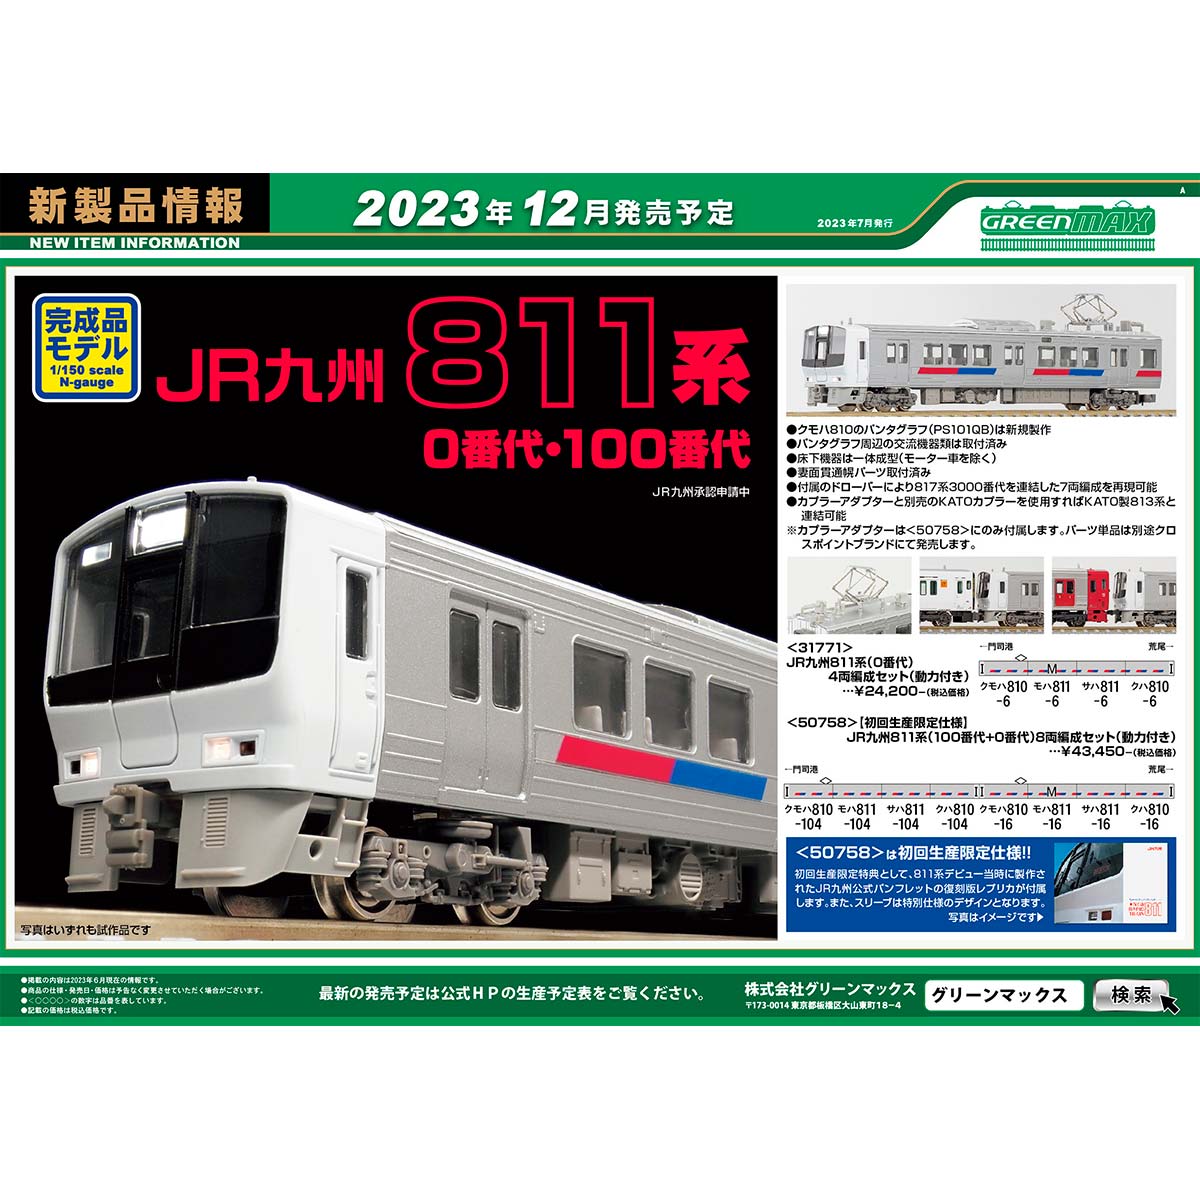 2023年7月13日発行A｜新製品情報ポスター｜Nゲージ鉄道模型の 